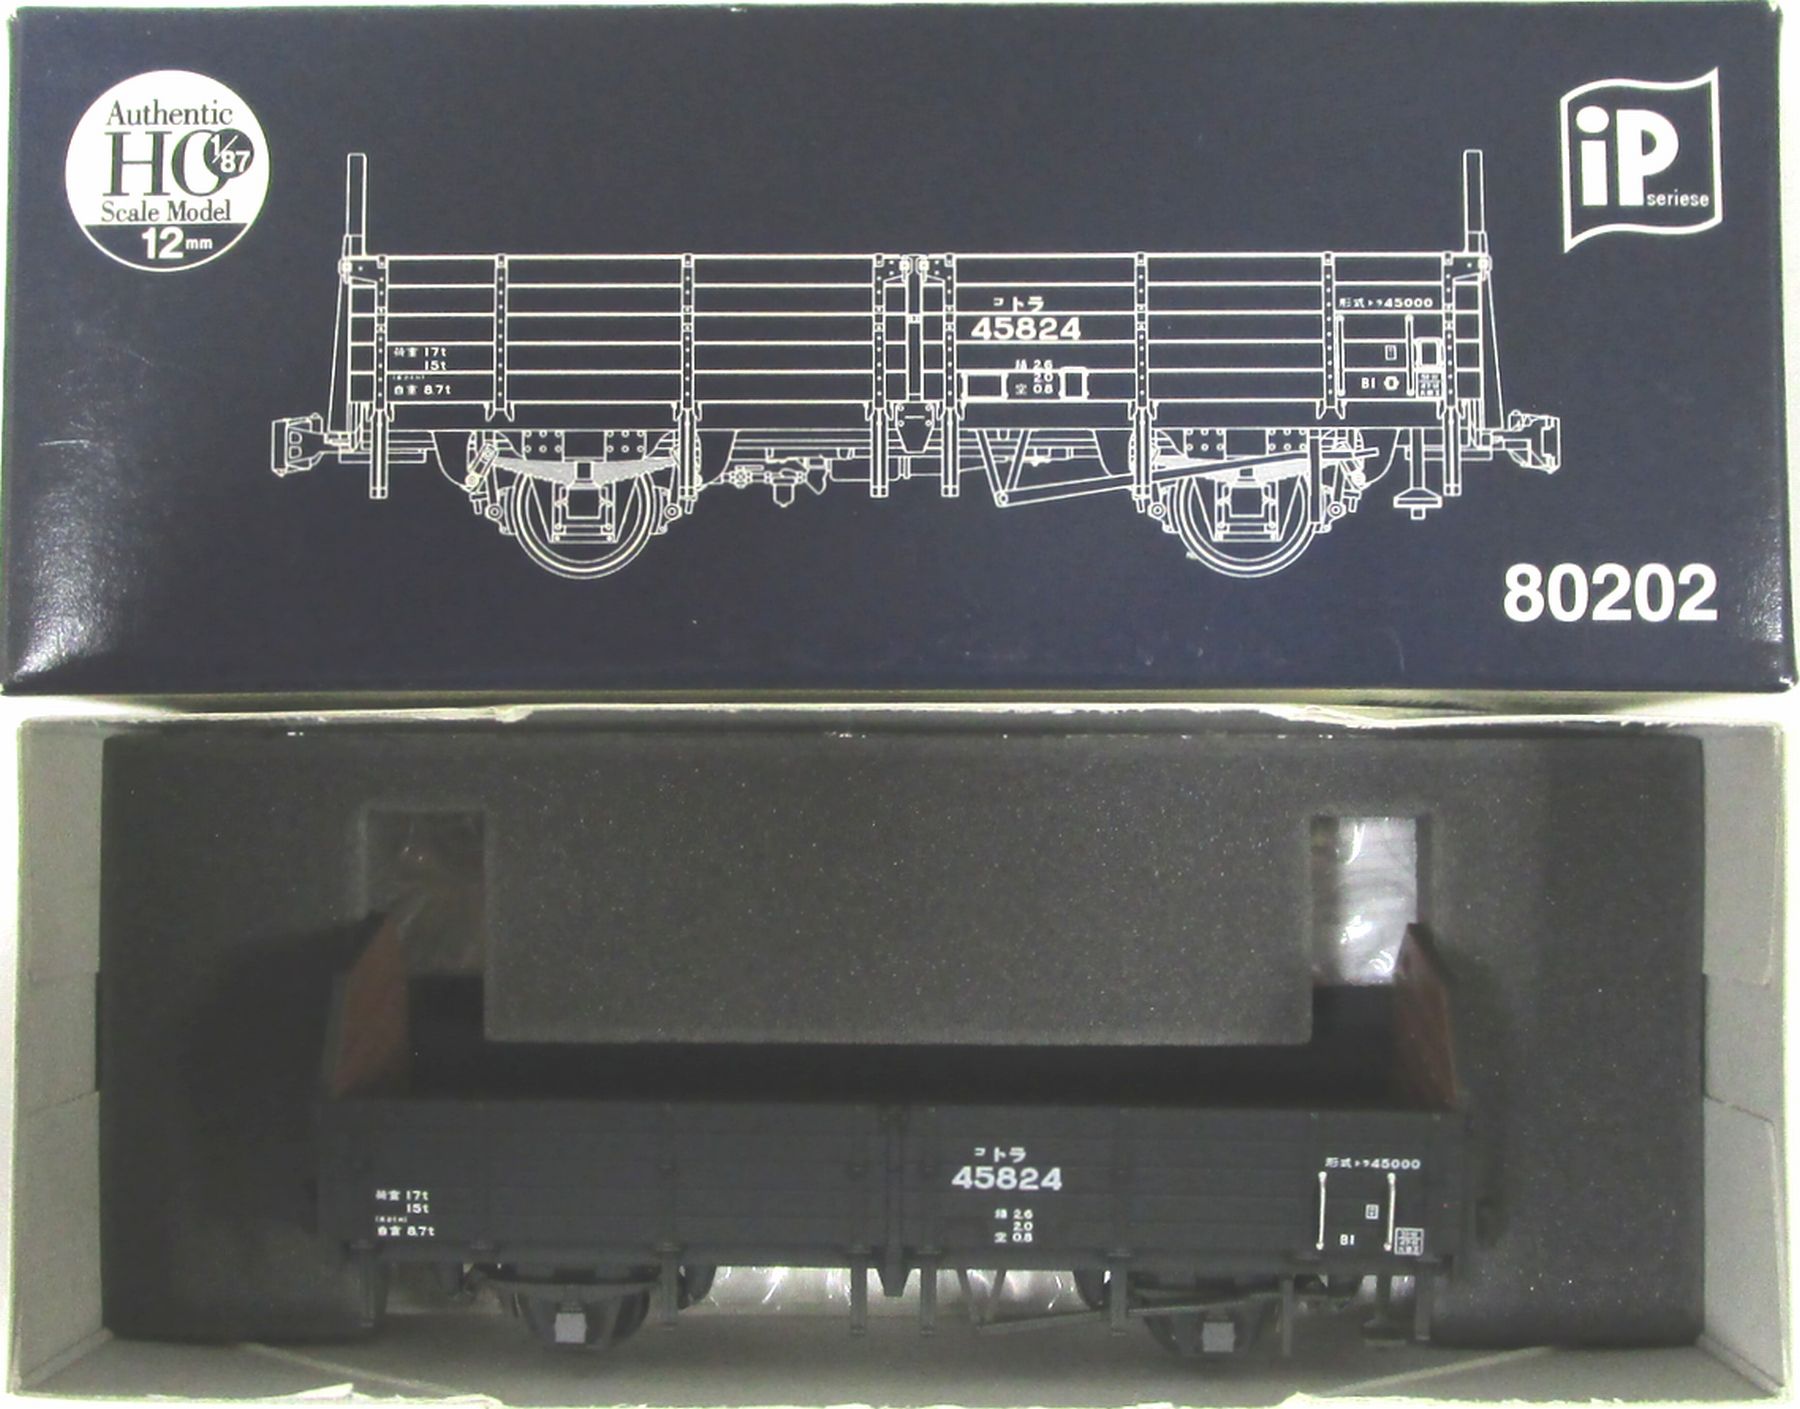 【中古】HOゲージ その他 鉄道模型 IMON (HO1067 1/87 12mm) IP80202 トラ45000 45824 【A´】 外箱傷み ※1/87 12mmゲージの製品です